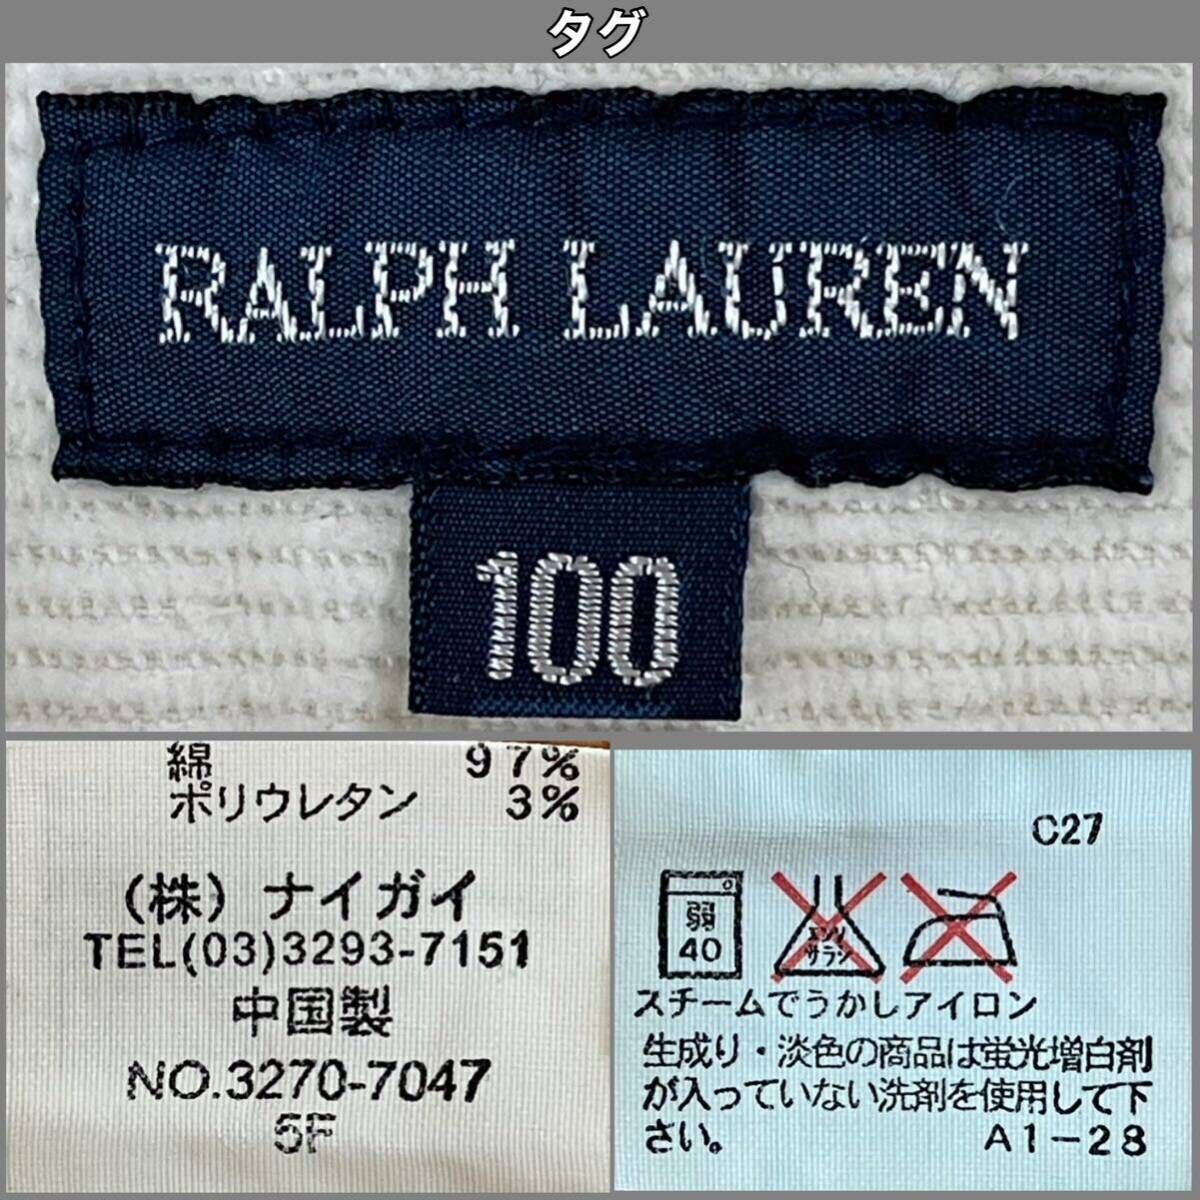 超美品 Ralph Lauren(ラルフローレン)コーデュロイ スカート 100cm キッズ ガールズ アイボリー 使用3回 ショート ミニ スポーツアウトドア